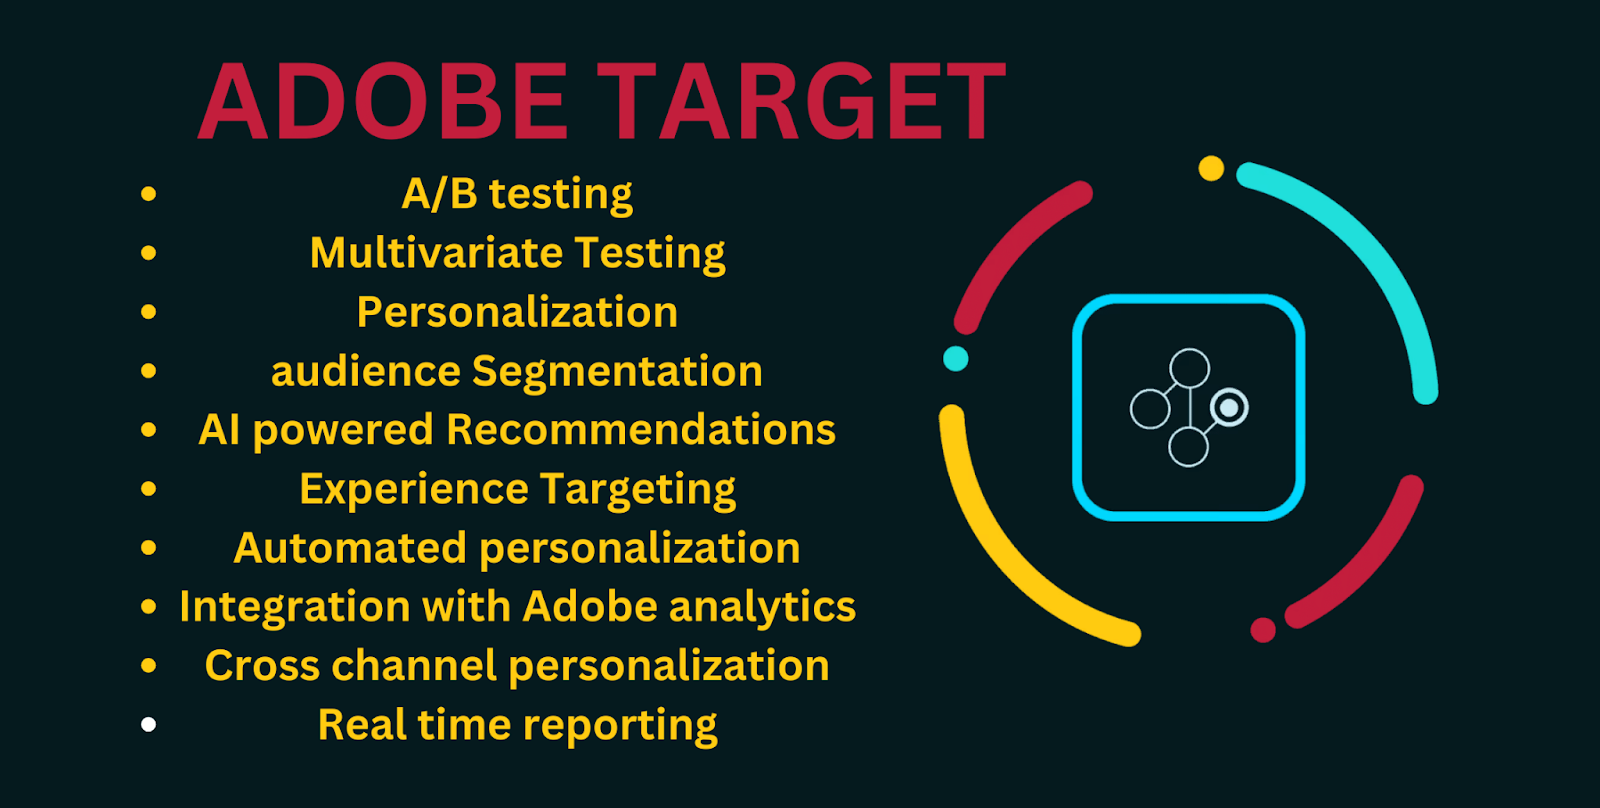 Adobe Target A/B testing